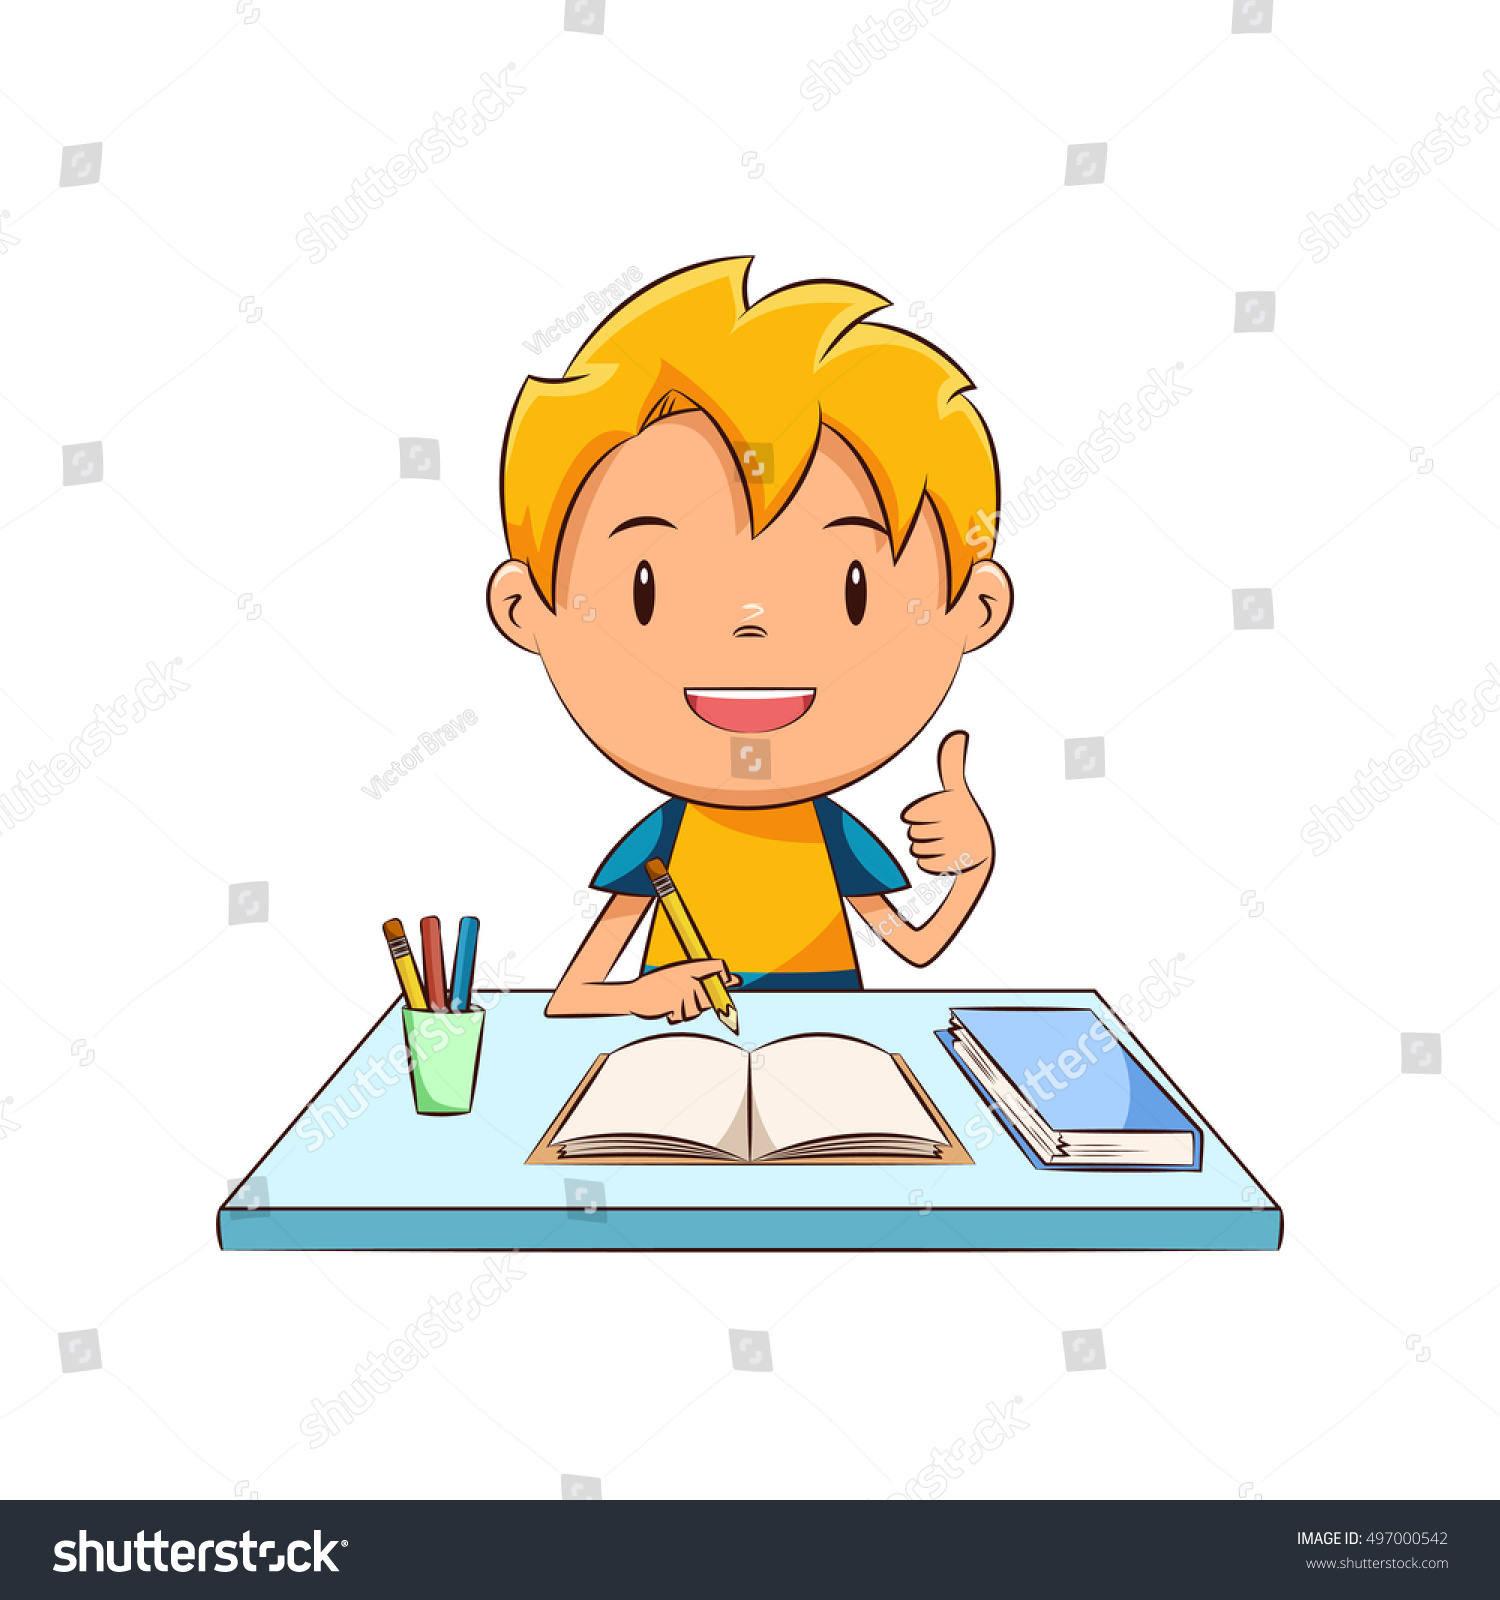 Do homework картинка для детей